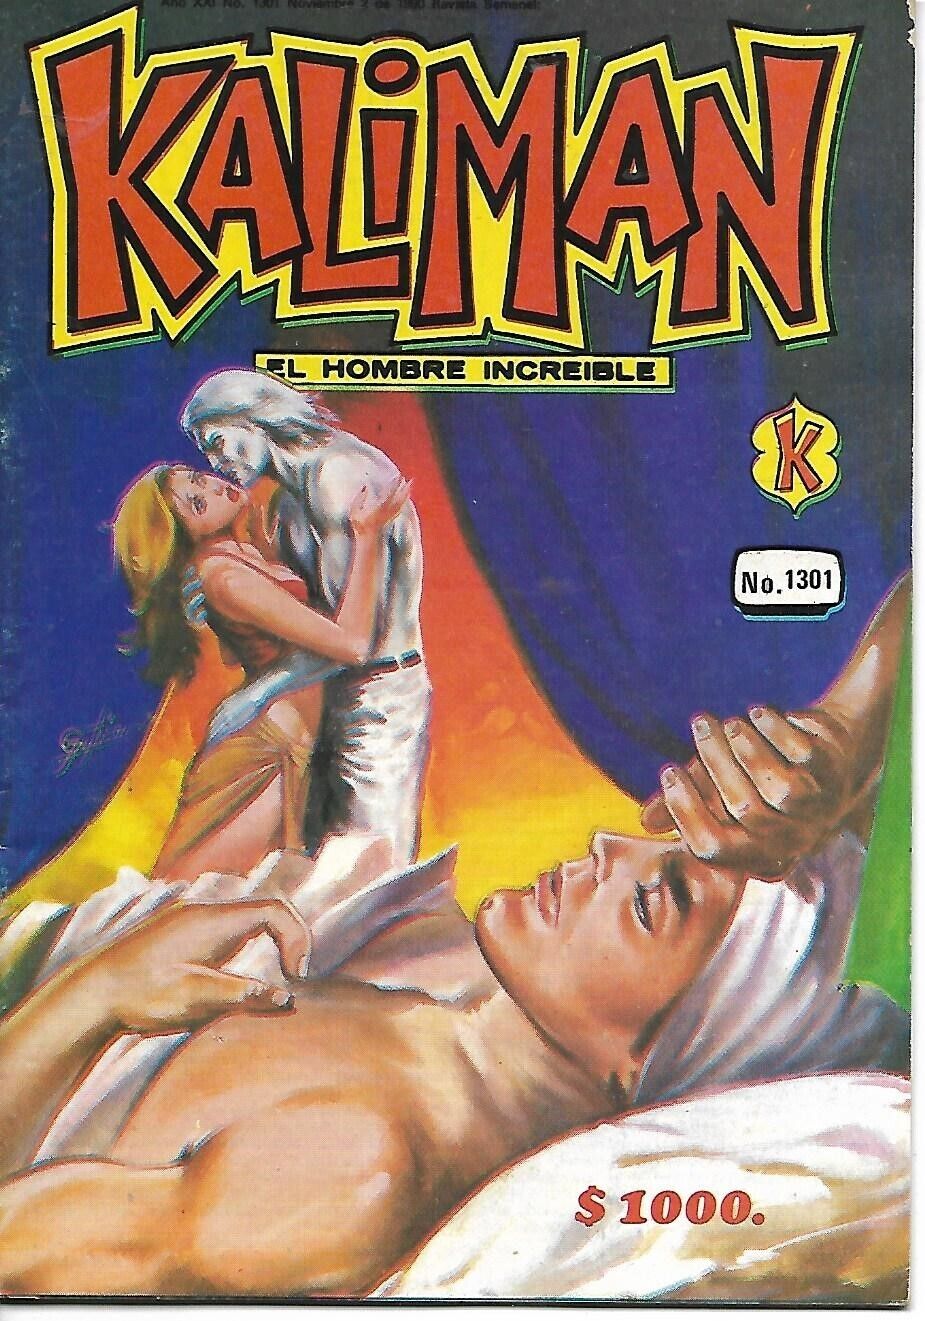 Kaliman El Hombre Increible #1301 - Noviembre 2, 1990